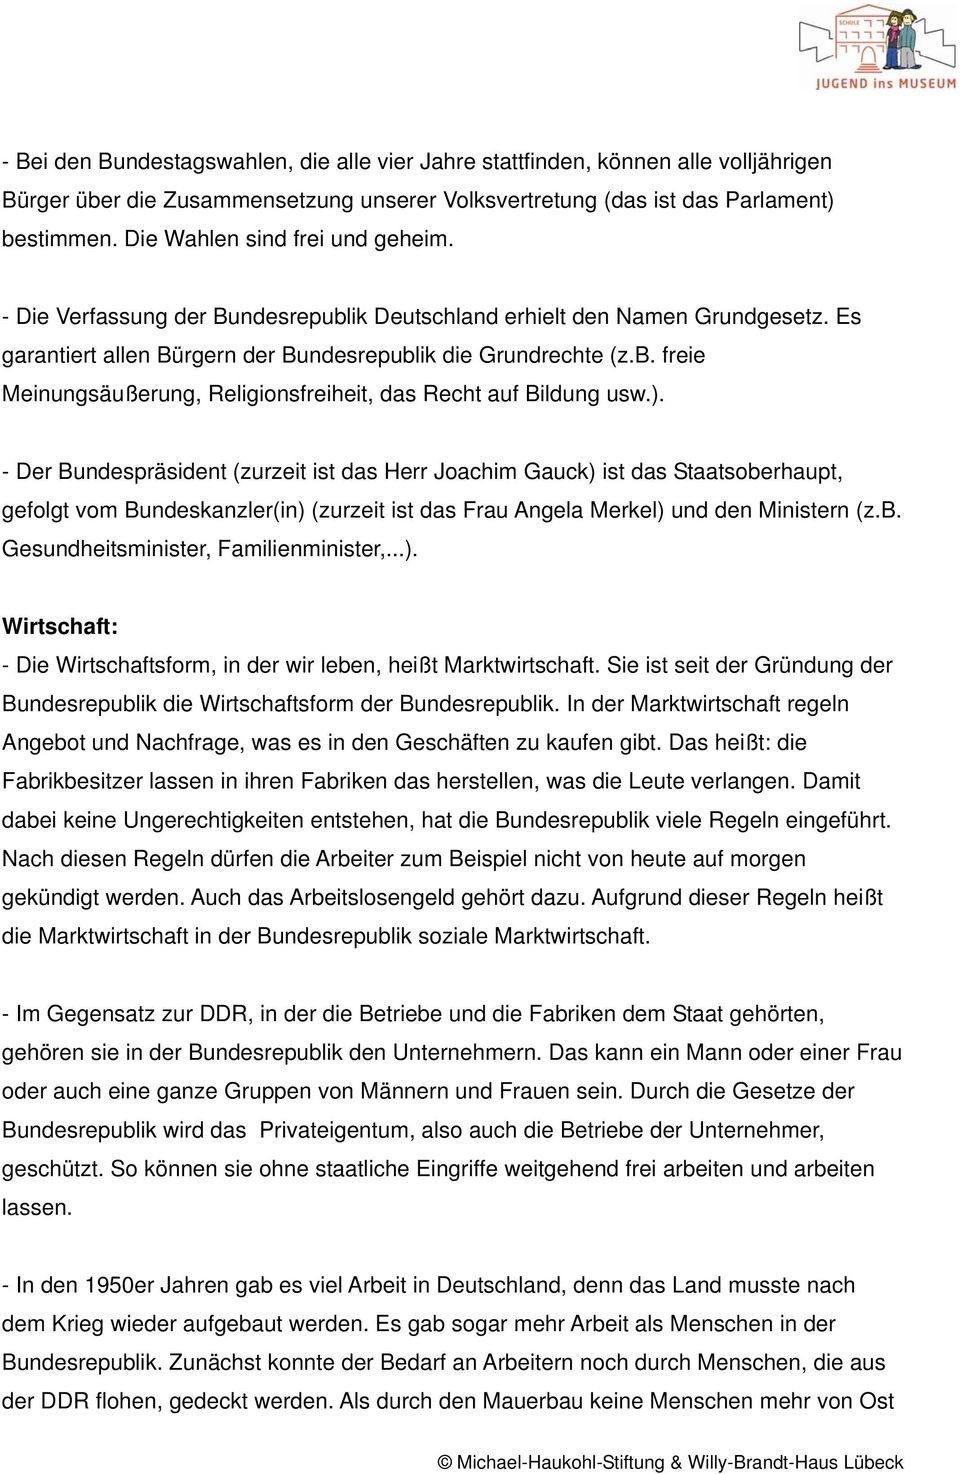 ). - Der Bundespräsident (zurzeit ist das Herr Joachim Gauck) ist das Staatsoberhaupt, gefolgt vom Bundeskanzler(in) (zurzeit ist das Frau Angela Merkel) und den Ministern (z.b. Gesundheitsminister, Familienminister,.